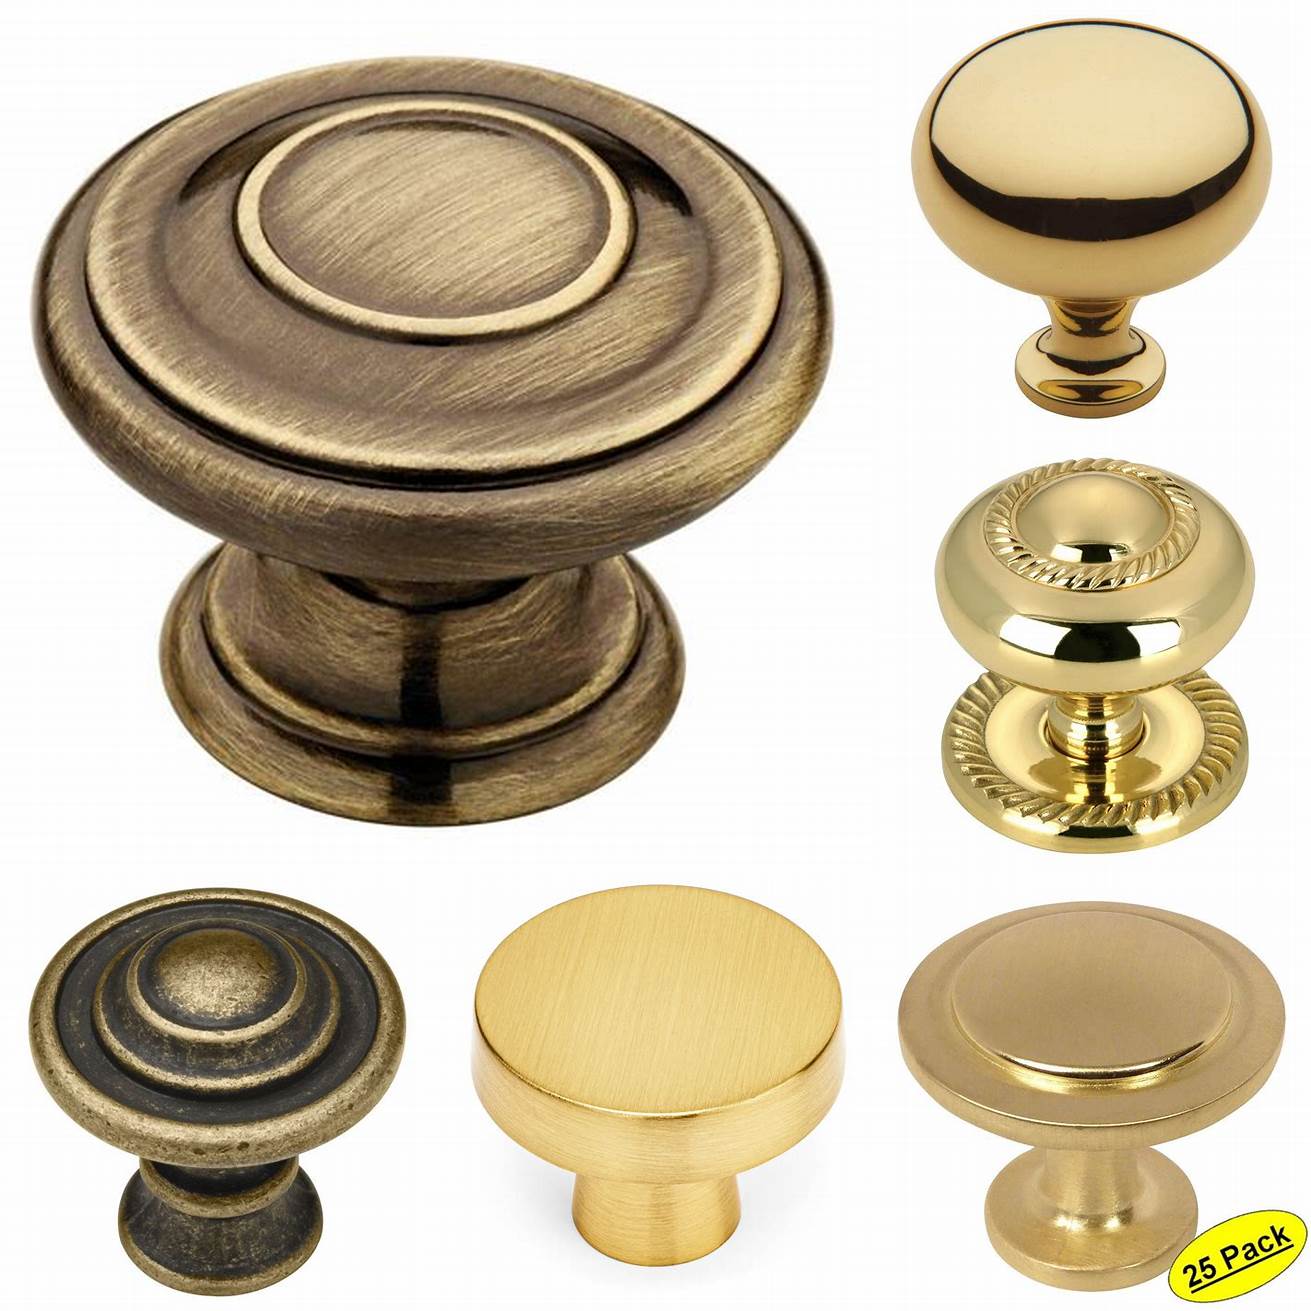 Round brass knobs